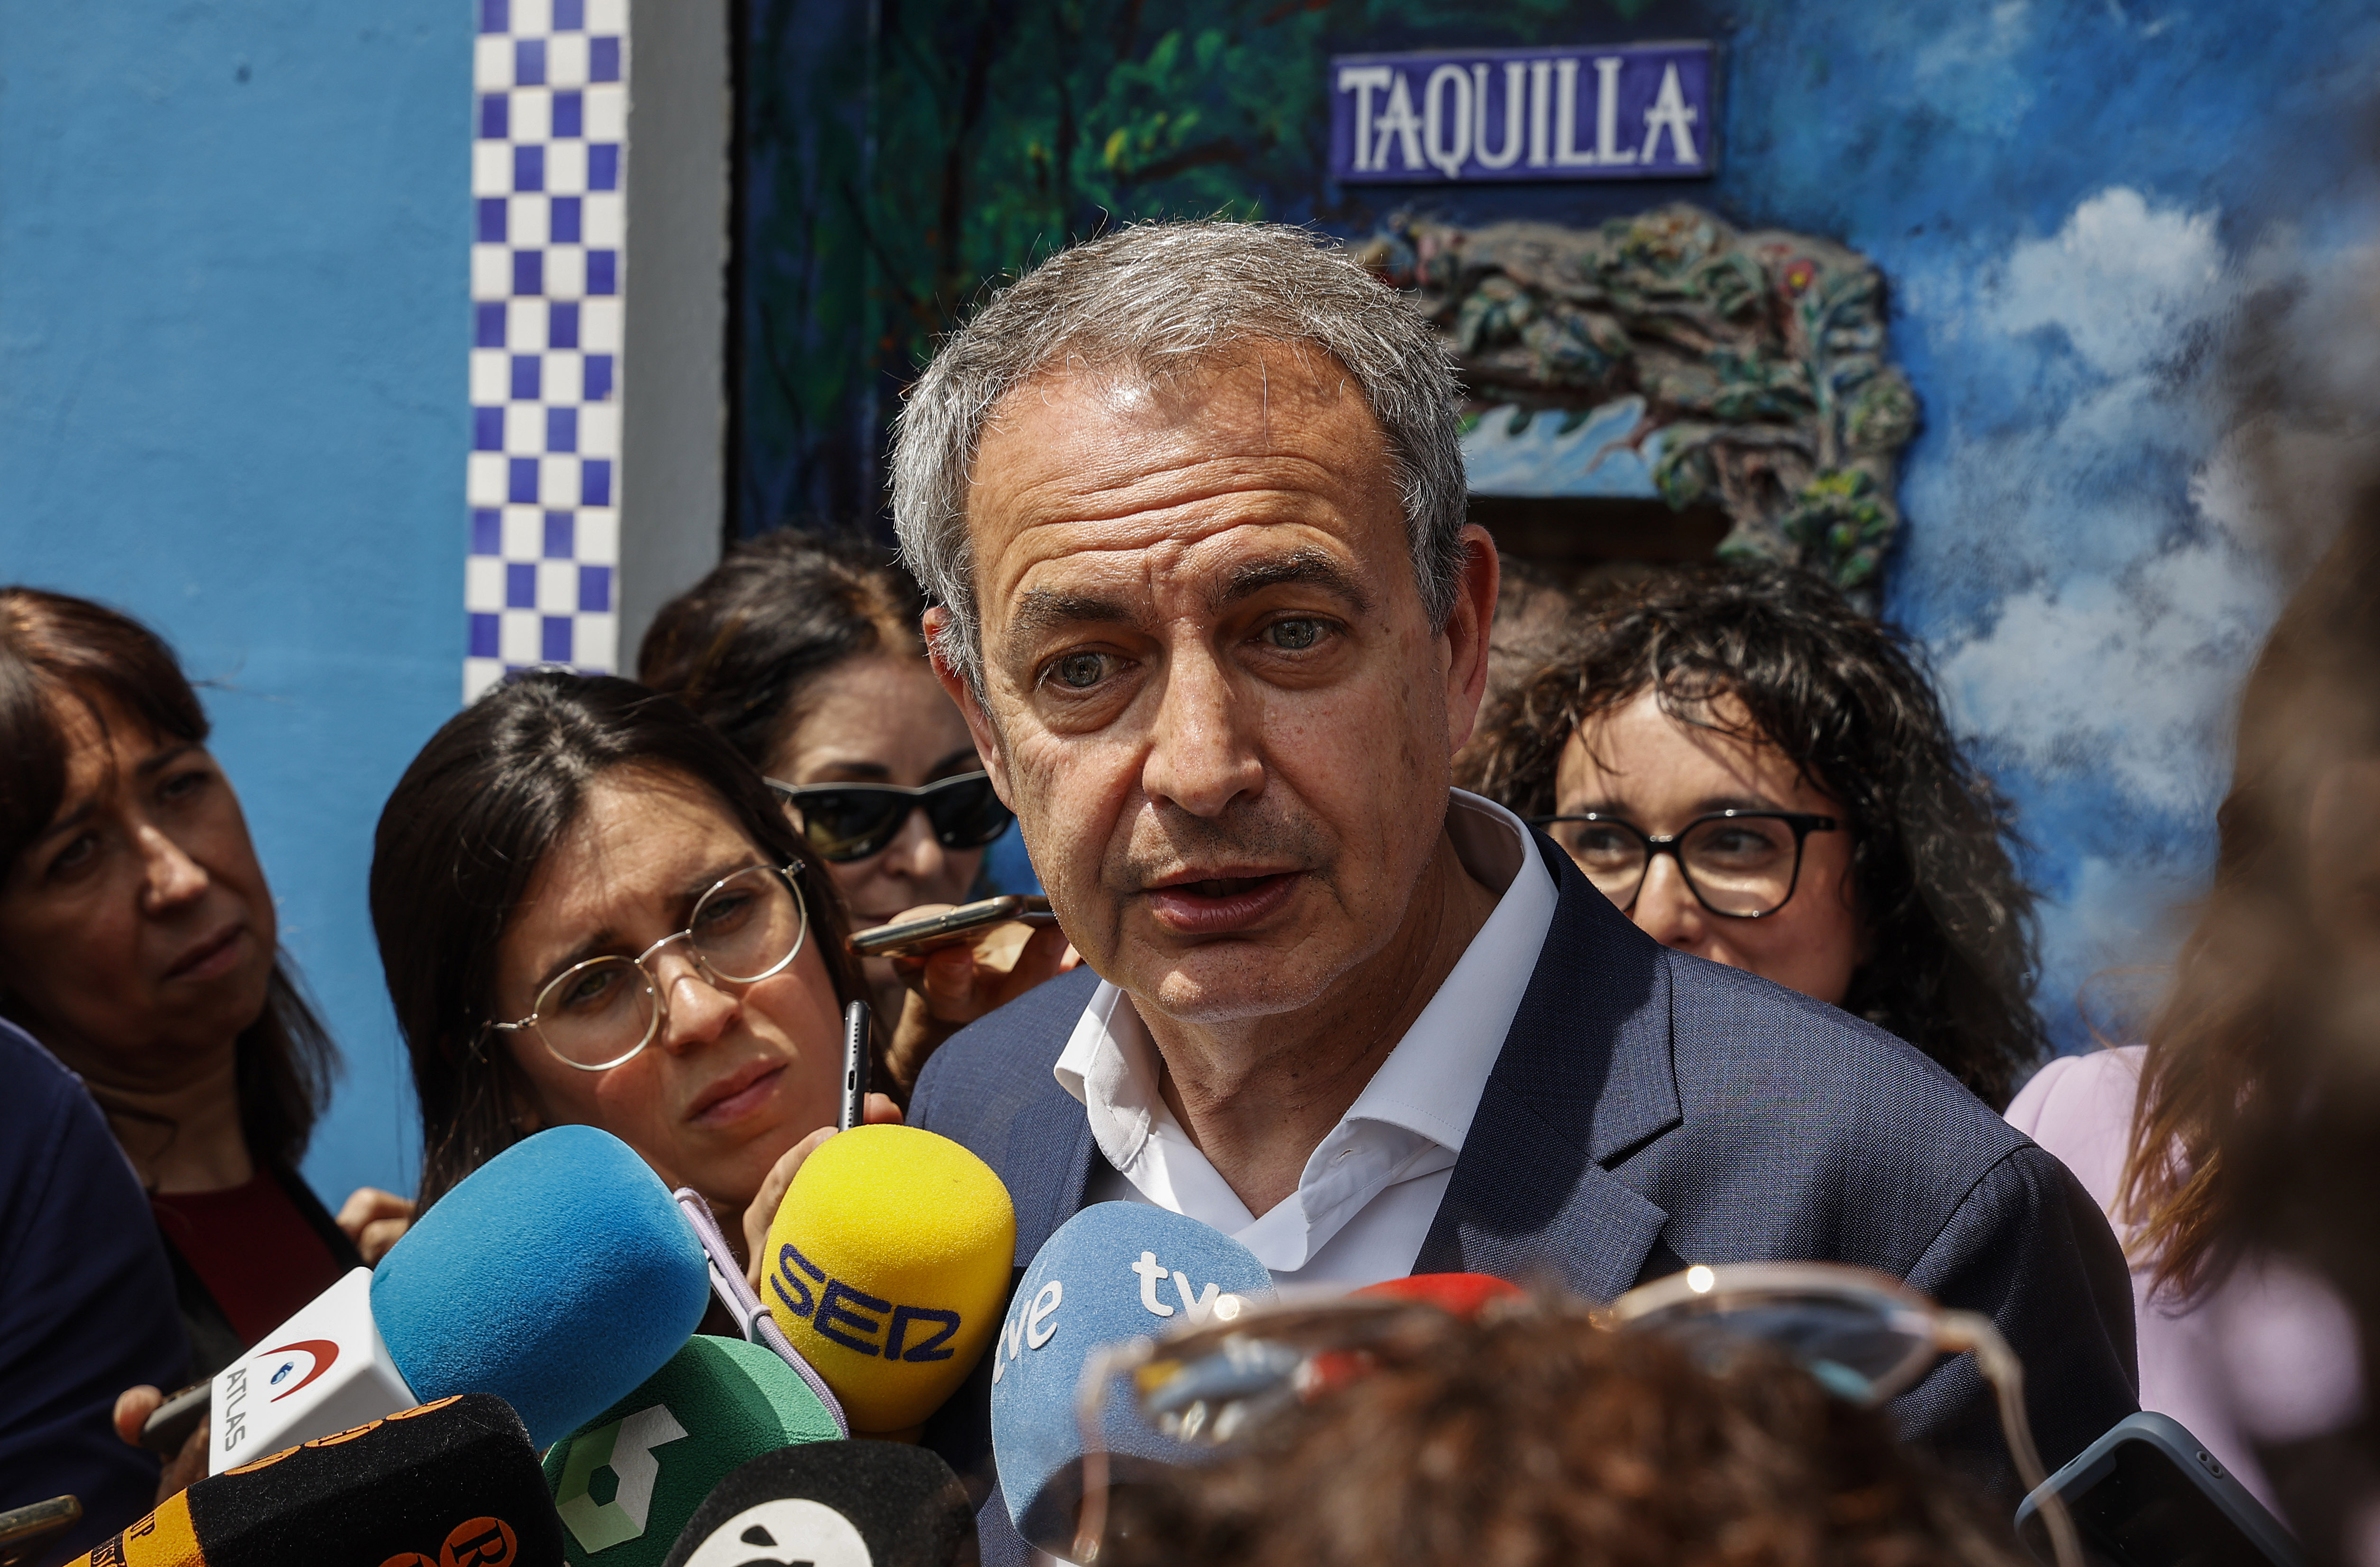 Zapatero llama a la movilización como en 2004 contra “el engaño y la desfachatez” de Aznar y Ayuso